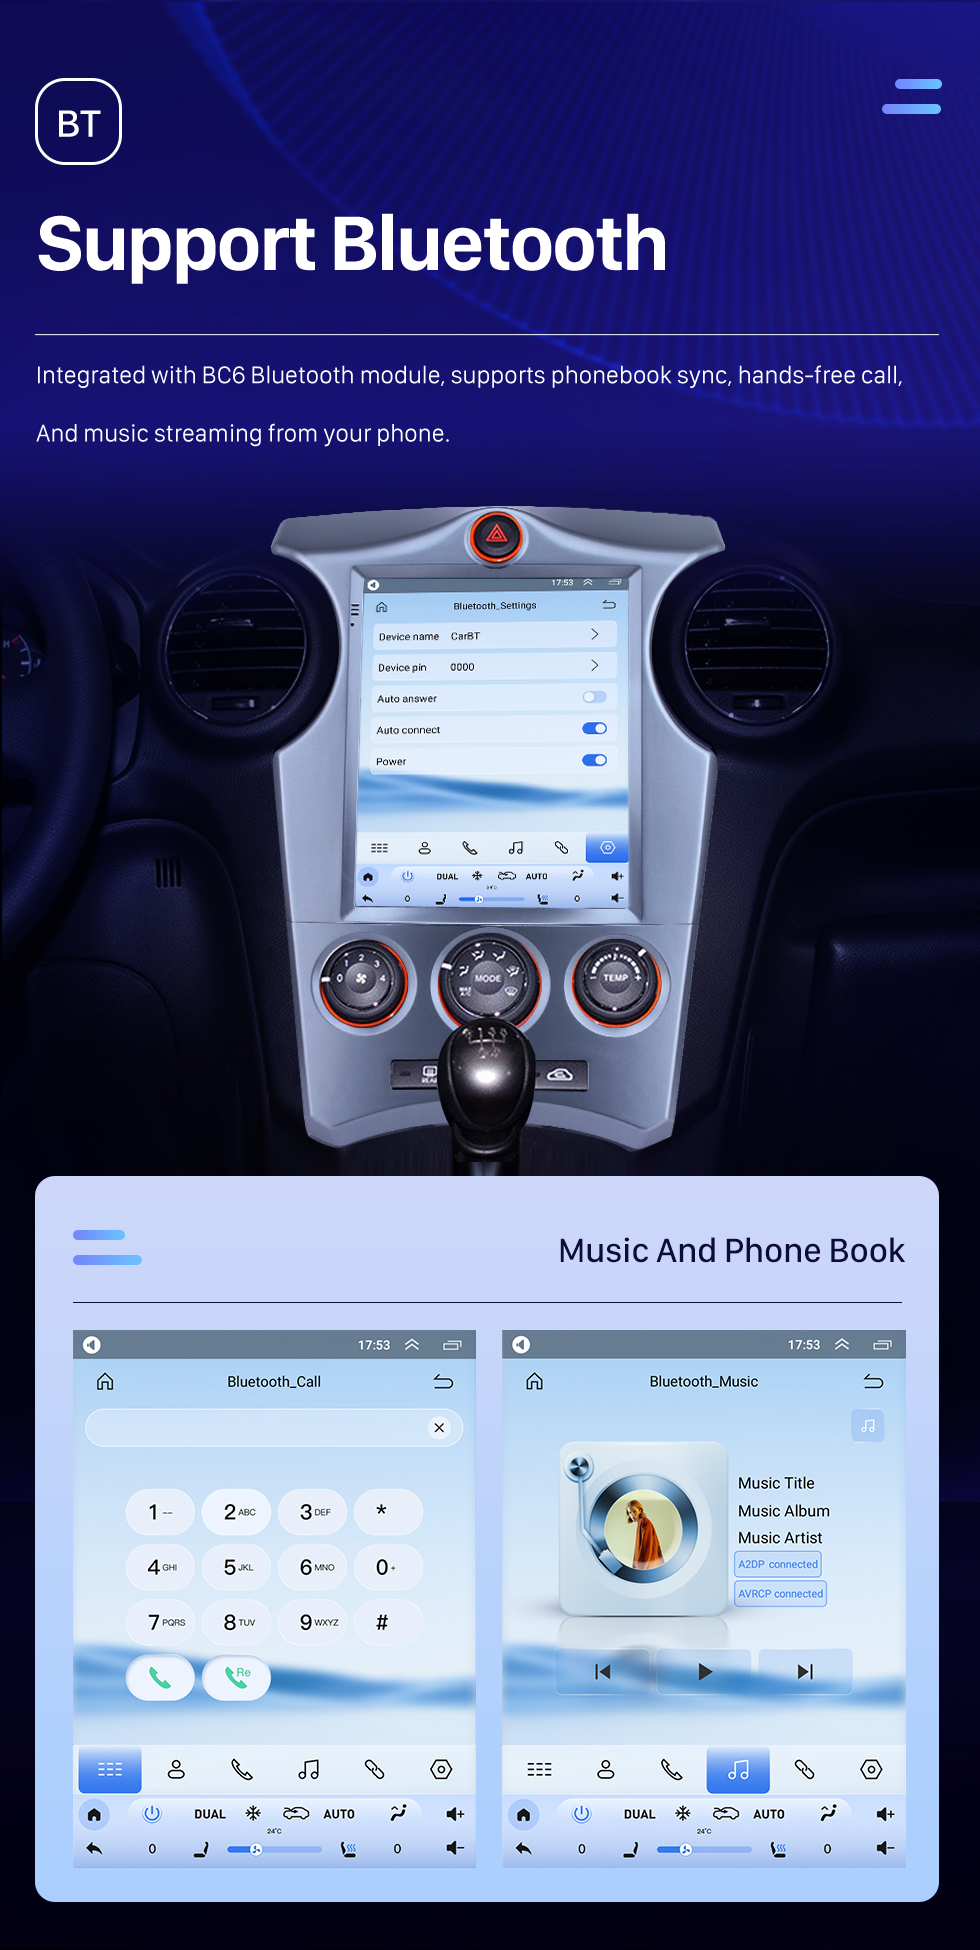 Seicane 2007-2012 Kia Carens Manual A / C 9.7 pulgadas Android 10.0 Radio de navegación GPS con pantalla táctil Bluetooth USB WIFI compatible Carplay Mirror Link 4G